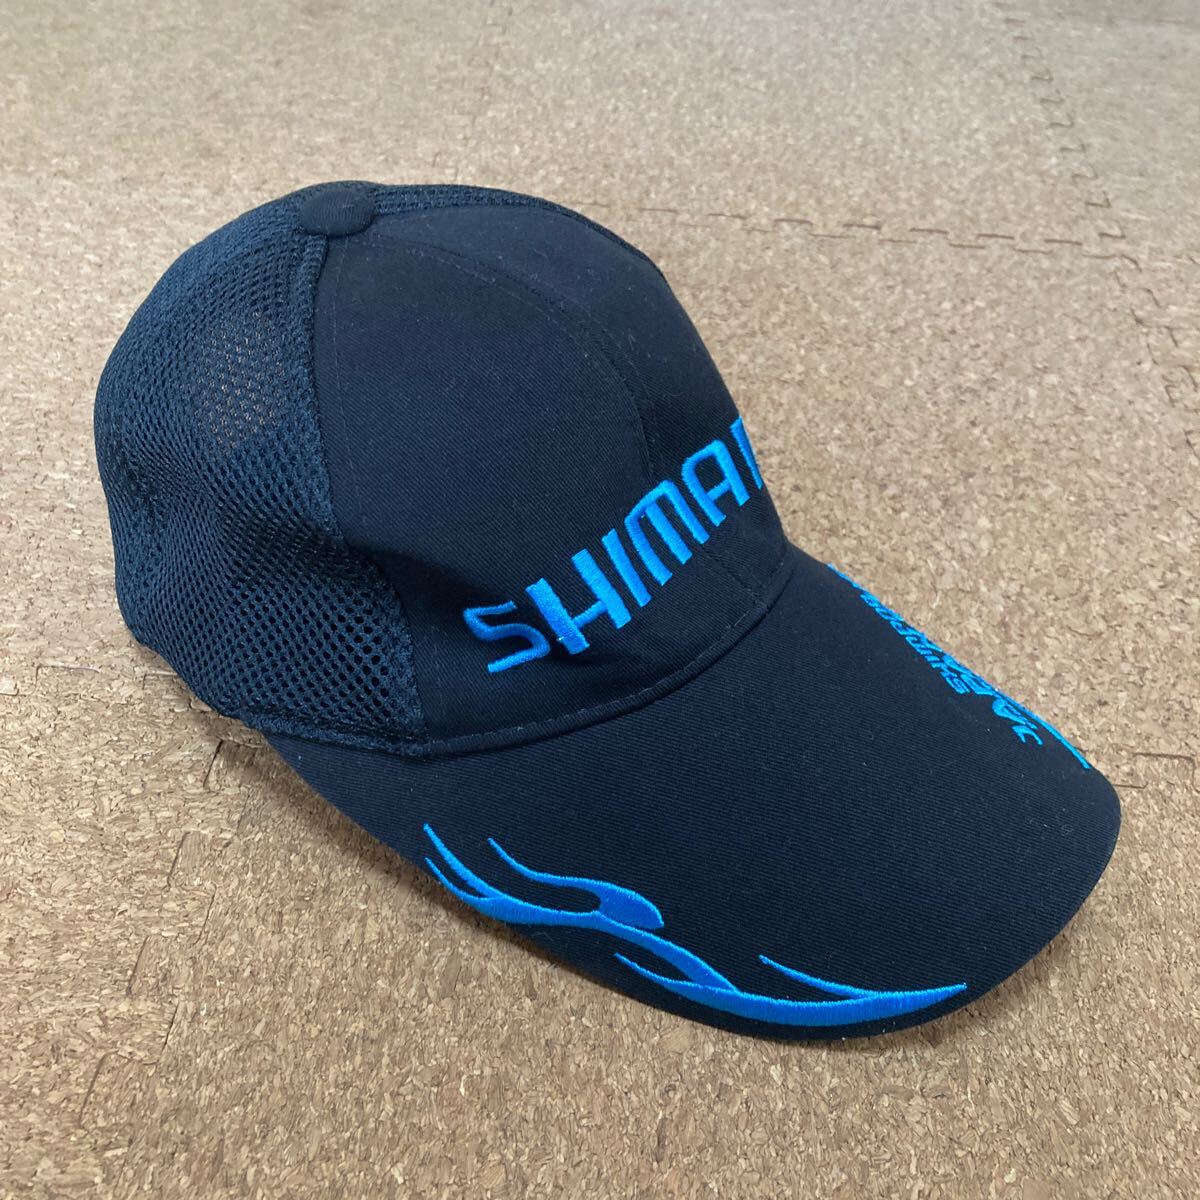 シマノ ジャパンカップ 2019 メッシュ キャップ サイズ56〜59cm 帽子の画像3